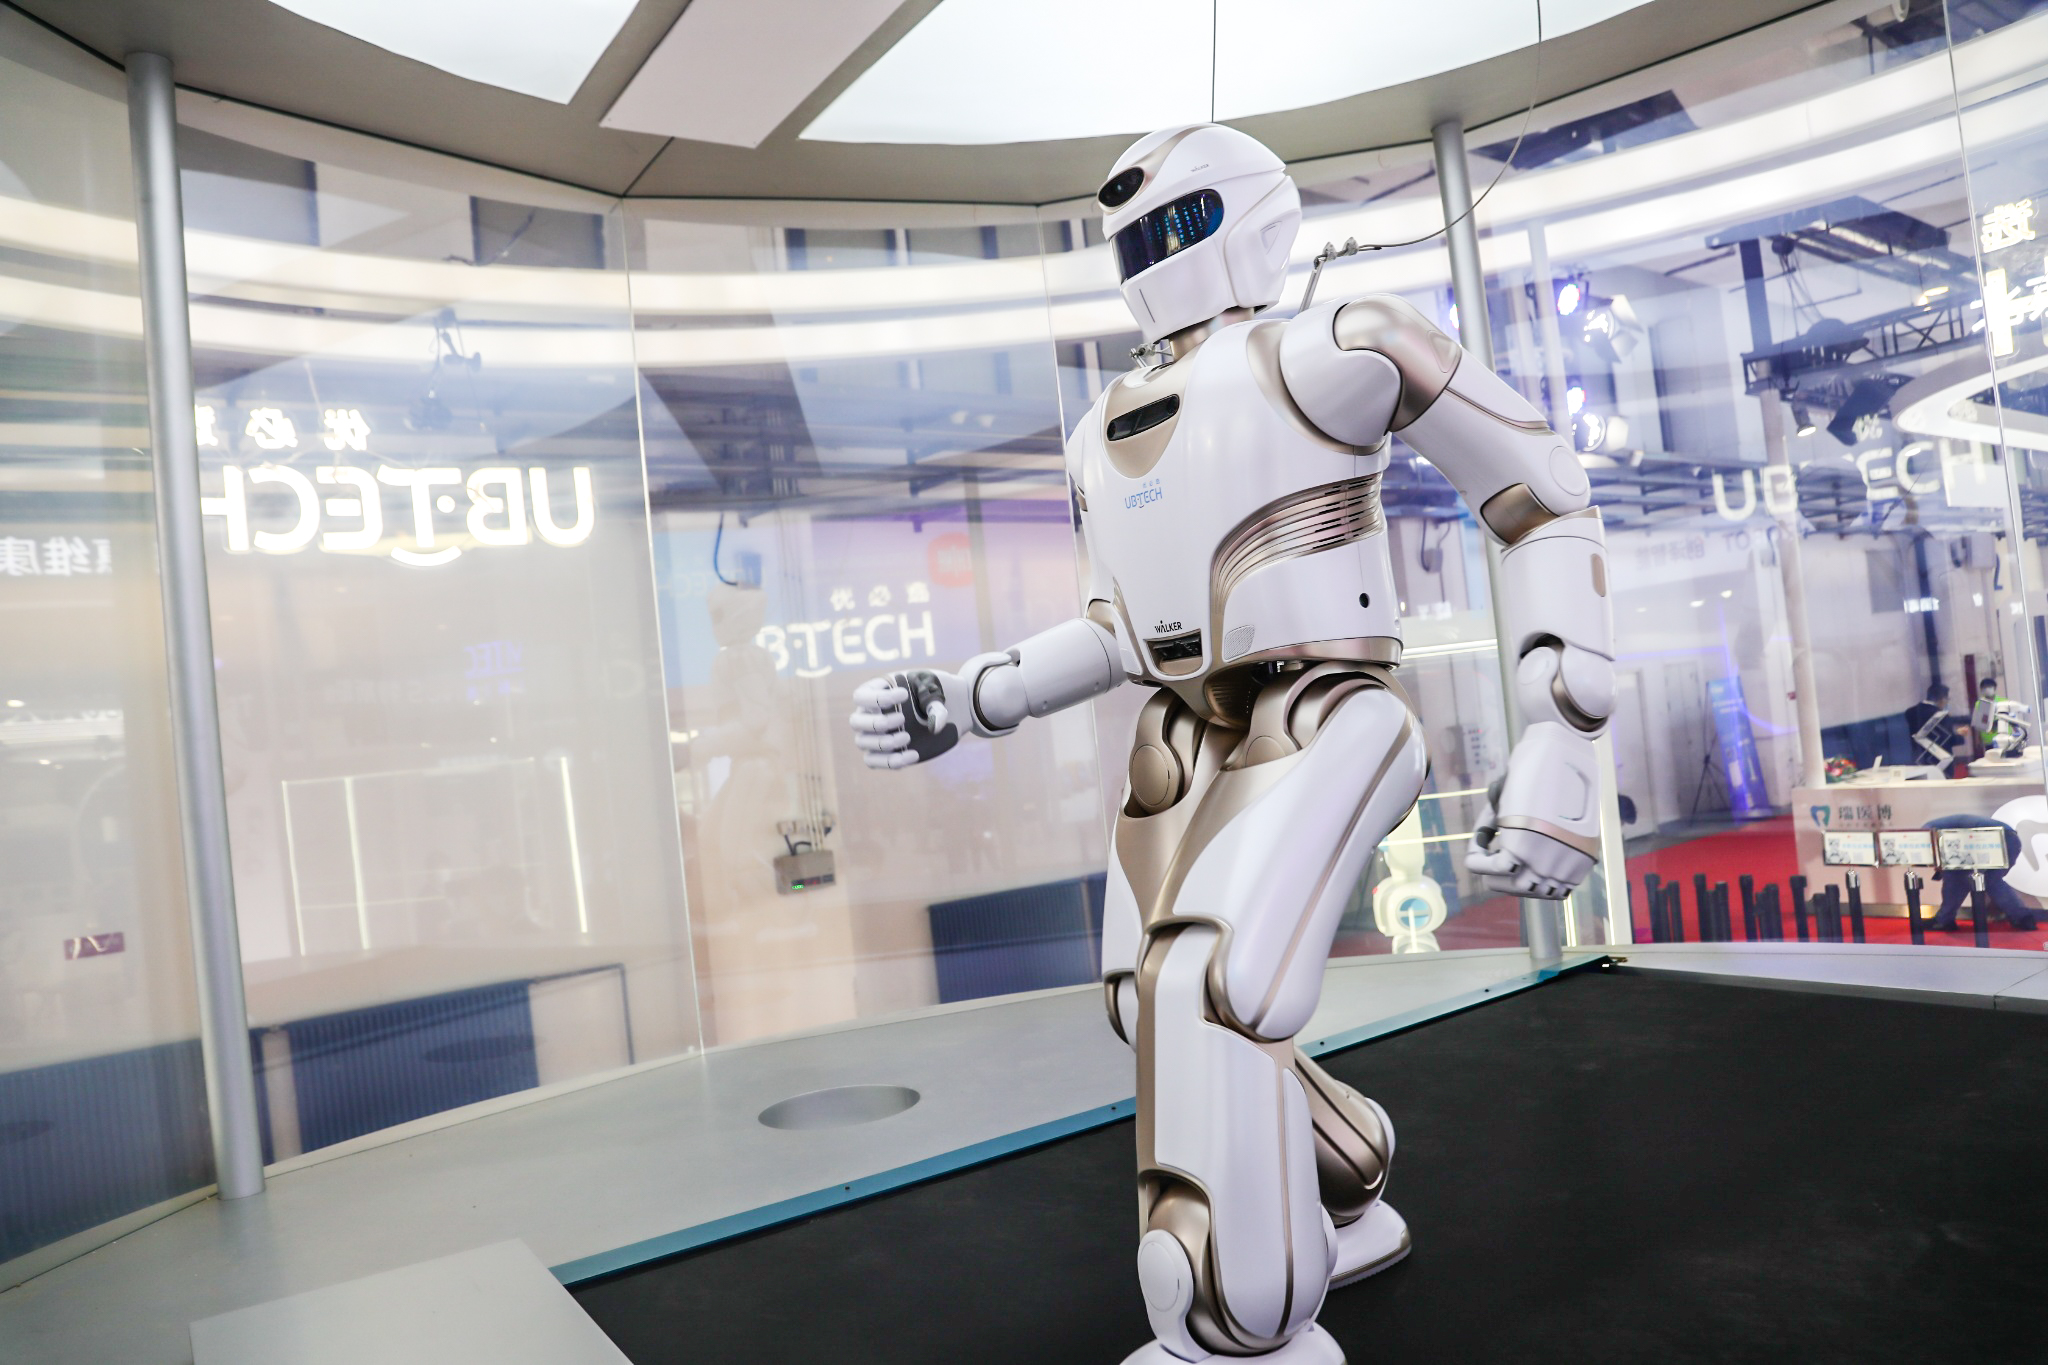 优必选科技冲刺人形机器人第一股,中国人形机器人迈入新阶段